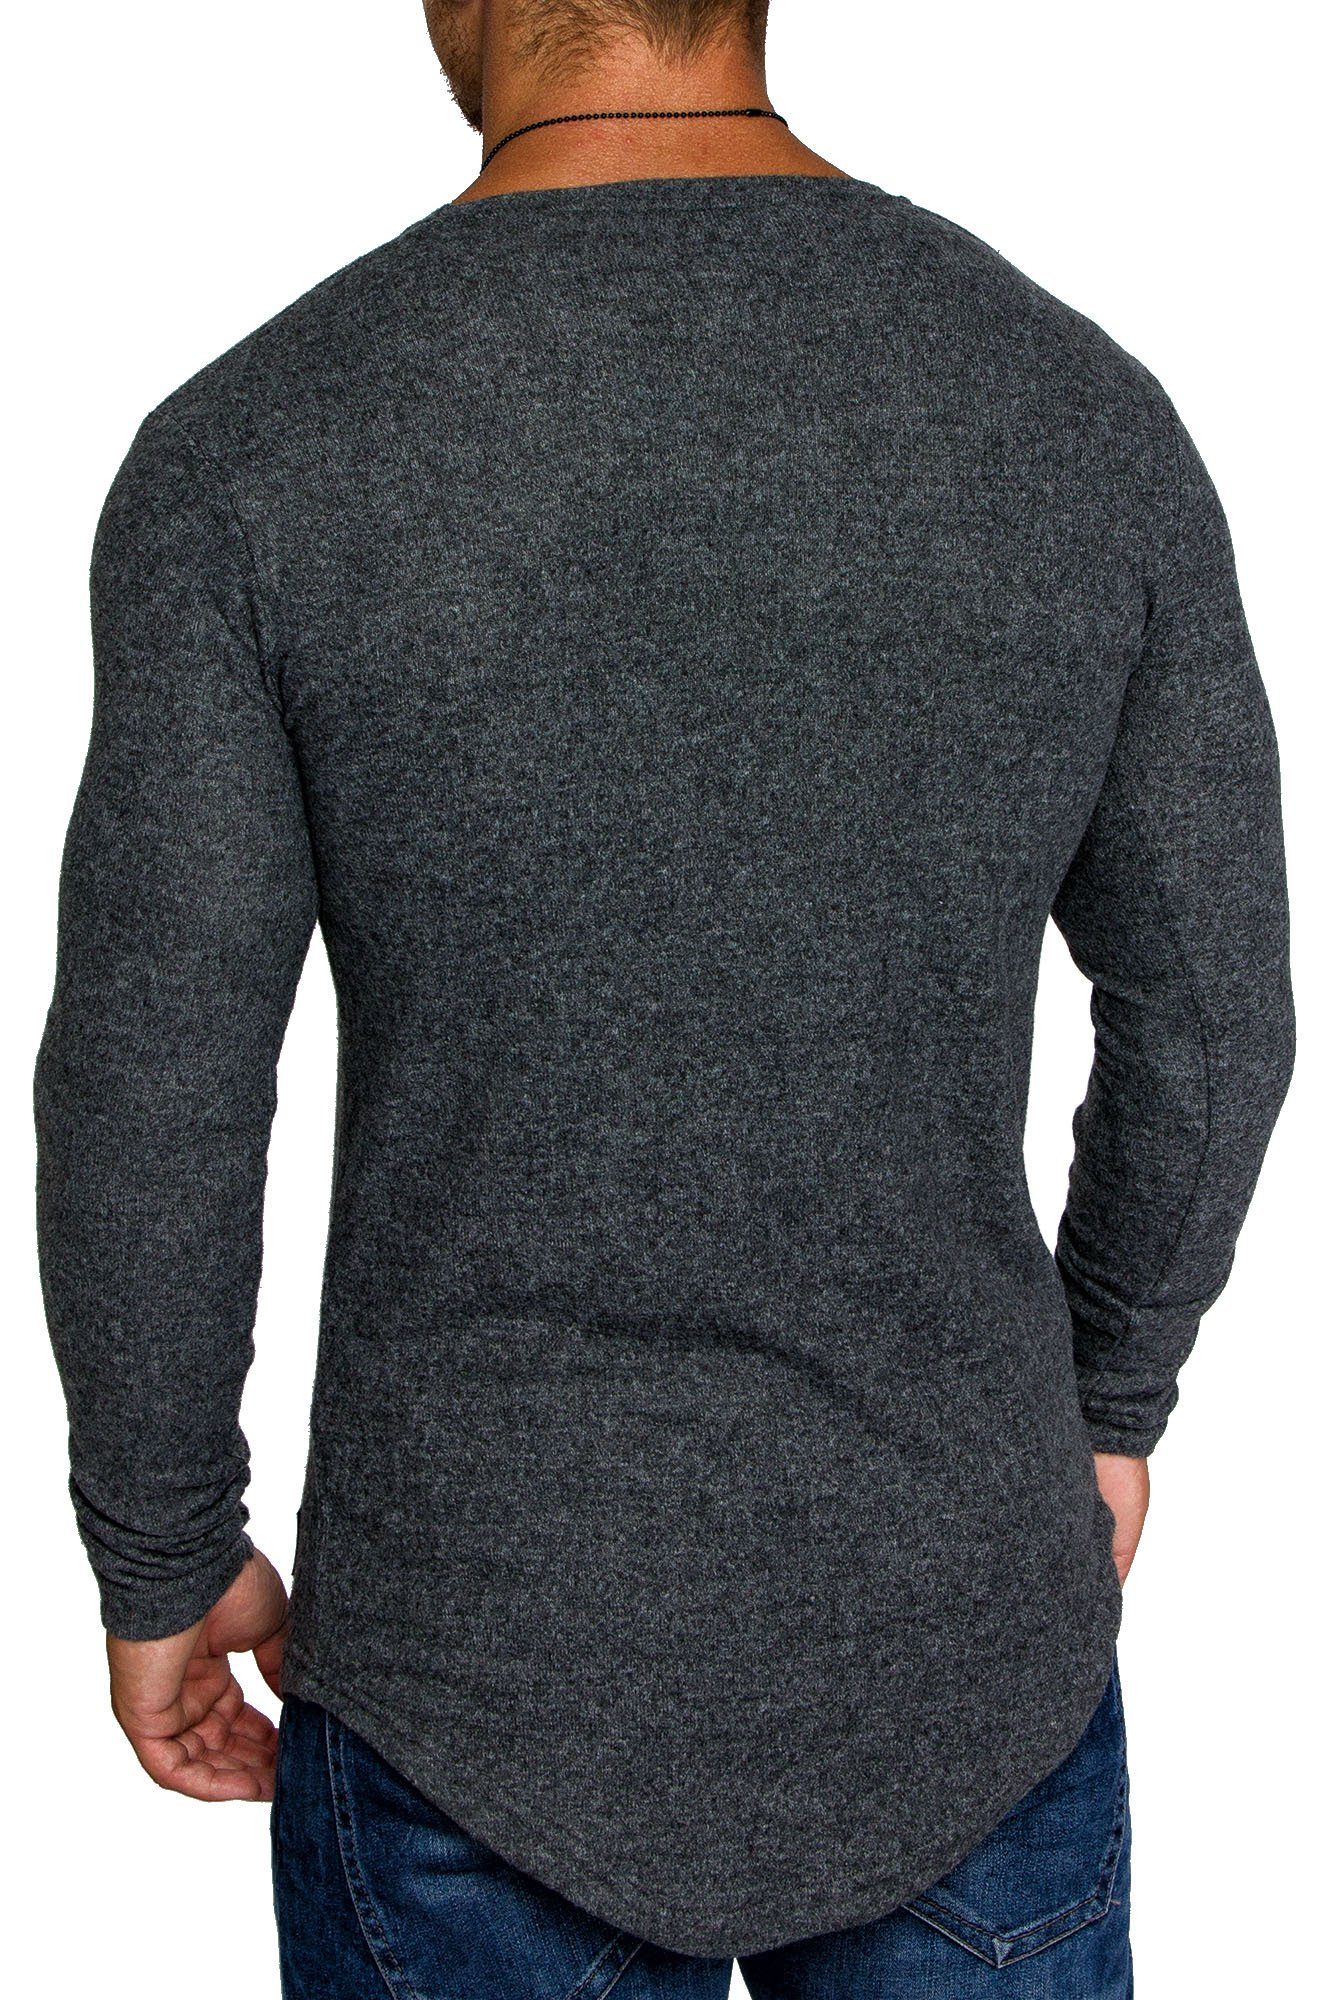 Oversize Melange DAVIE Pullover Dunkelgrau mit Herren Hoodie Pullover Sweatshirt Feinstrick V-Ausschnitt Amaci&Sons Basic